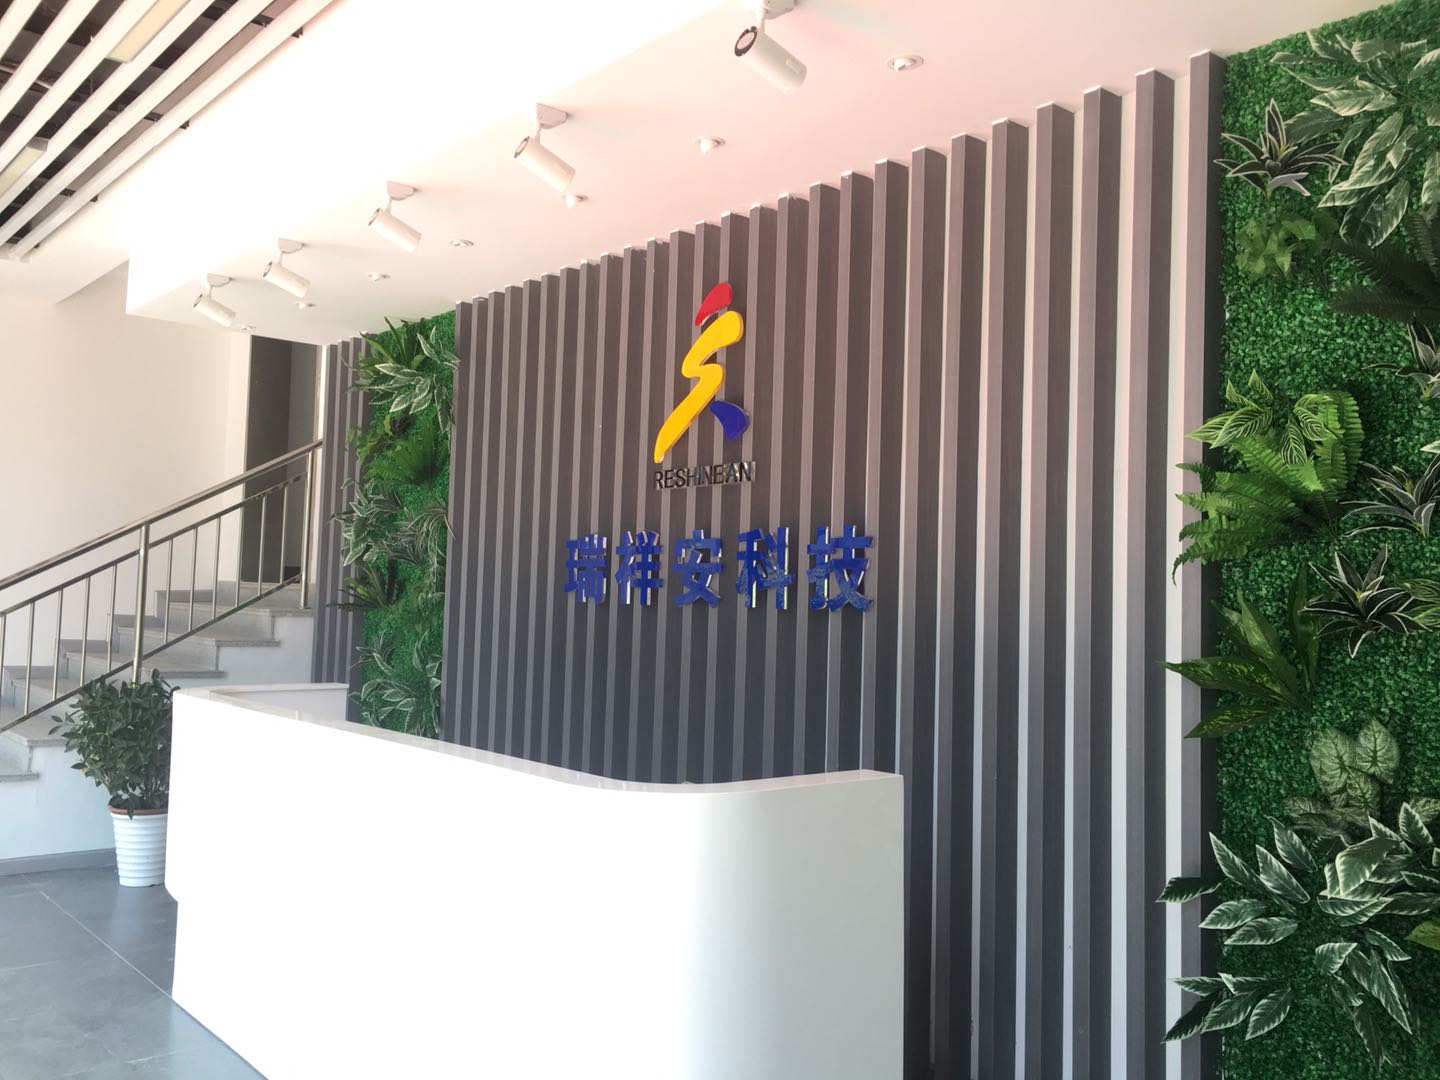 Wuhan ruixiang'an Technology Co., Ltd